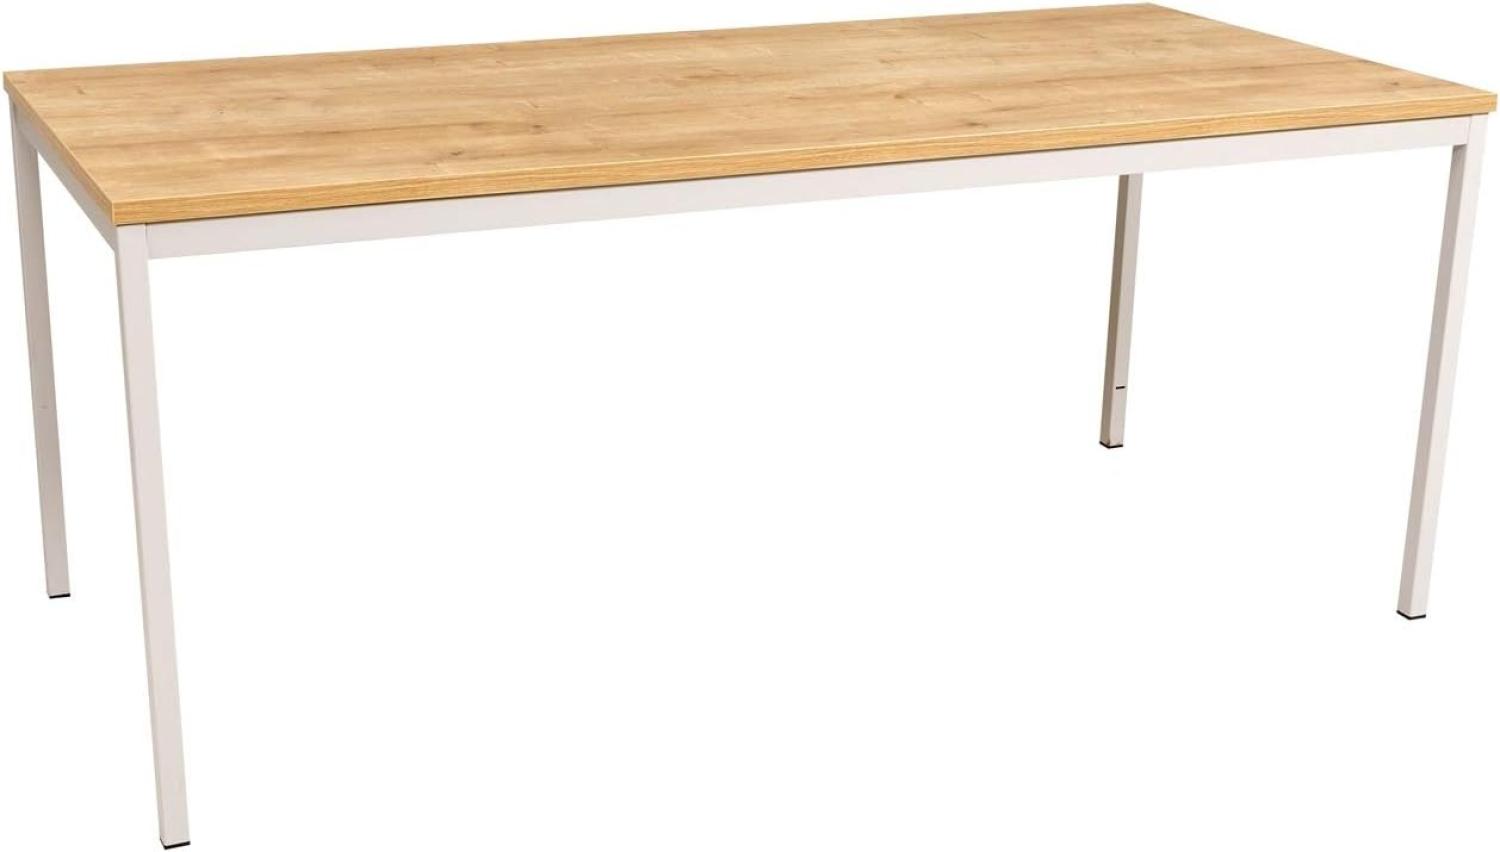 Furni24 Rechteckiger Universaltisch mit laminierter Platte Eiche 160x80x75 cm, Metallgestell und niveauausgleichs Füßen, ideal im Homeoffice als Schreibtisch, Konferenztisch, Computertisch, Esstisch Bild 1